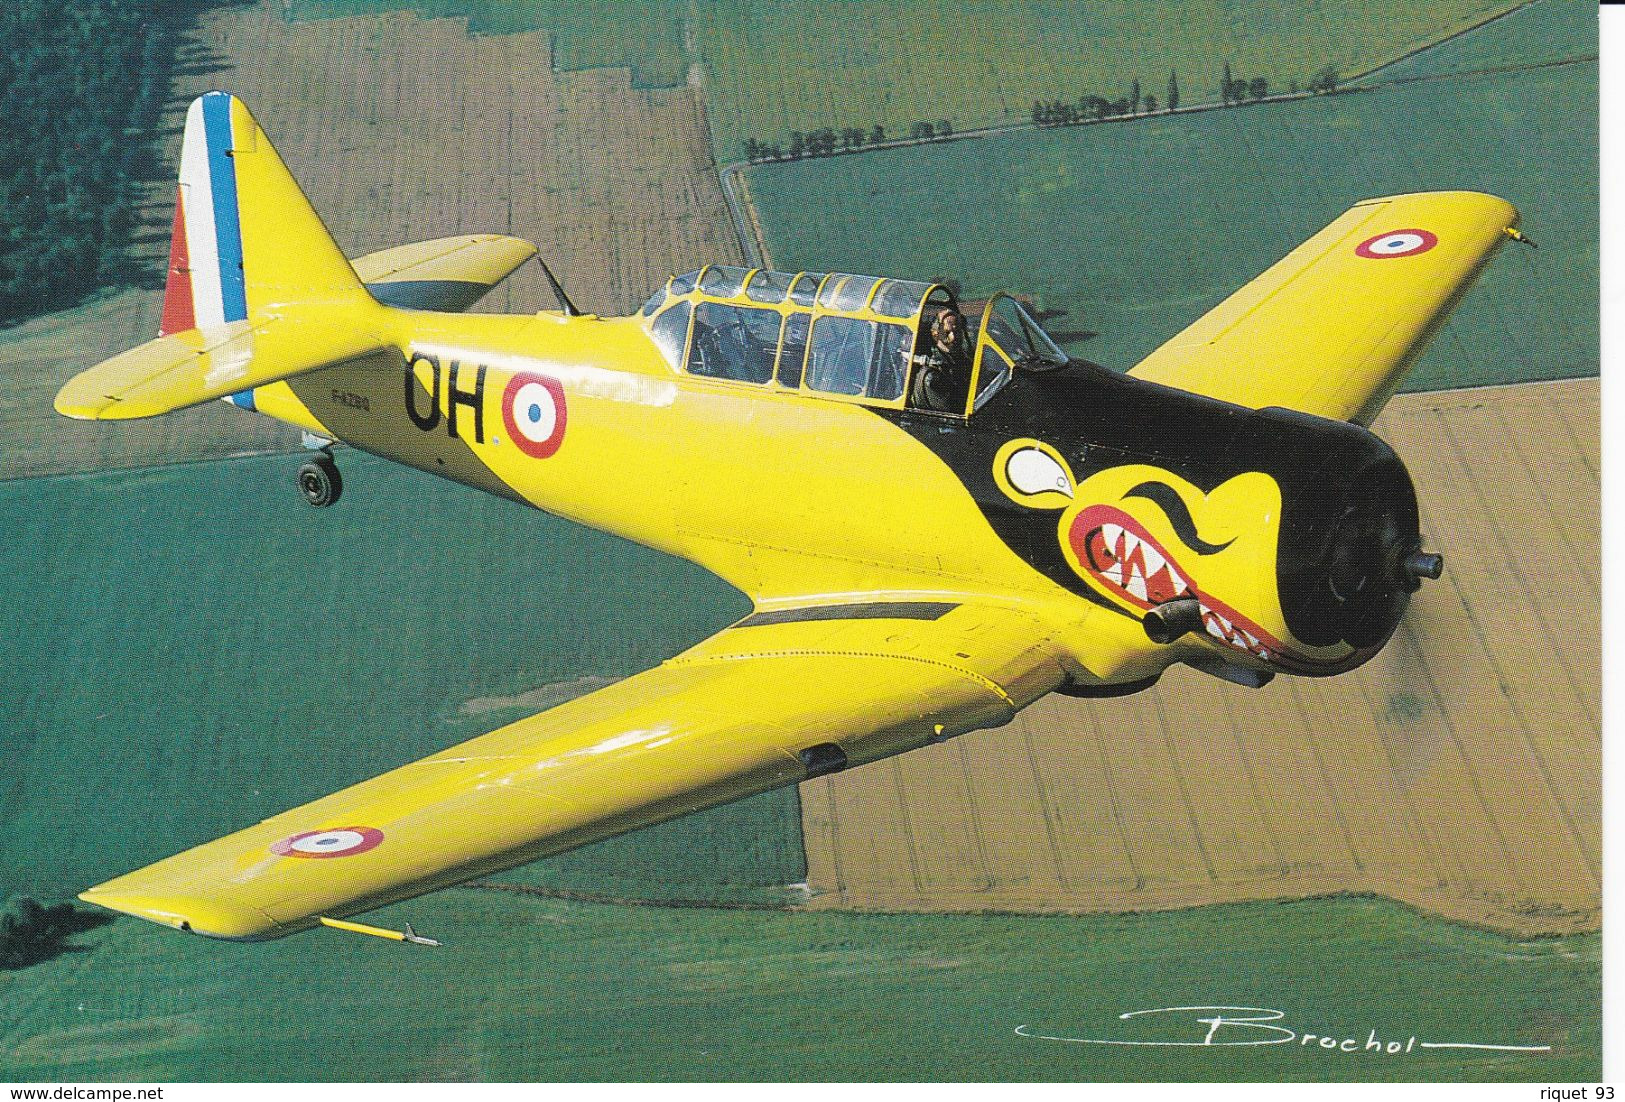 Lot 13 cpm-Collection Avions de Légende par le photographe Guy Brochot (voir scans)